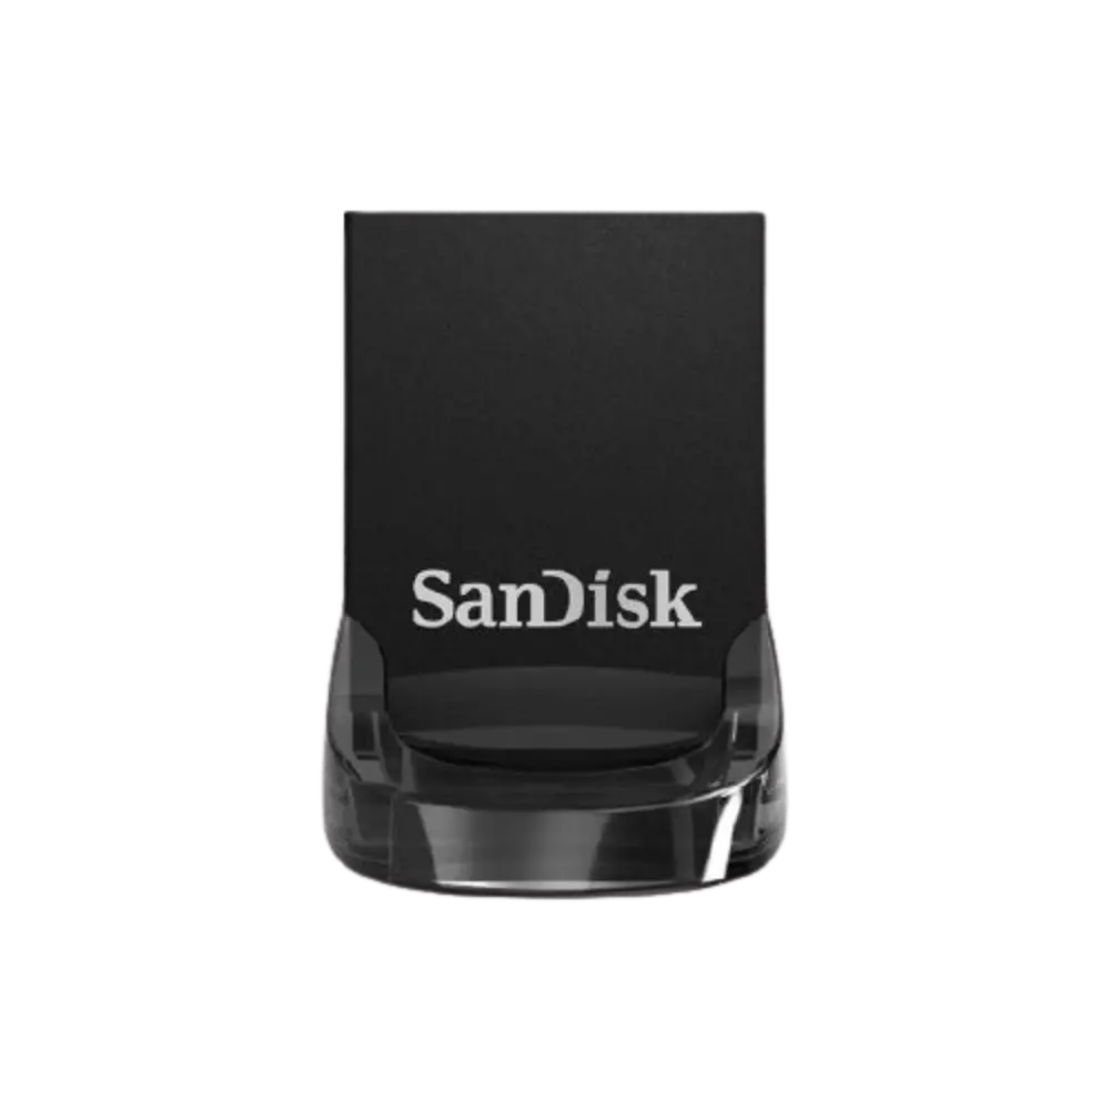 זיכרון ניידSanDisk Ultra Fit USB 3.1 64GB SDCZ430-064G 64GB